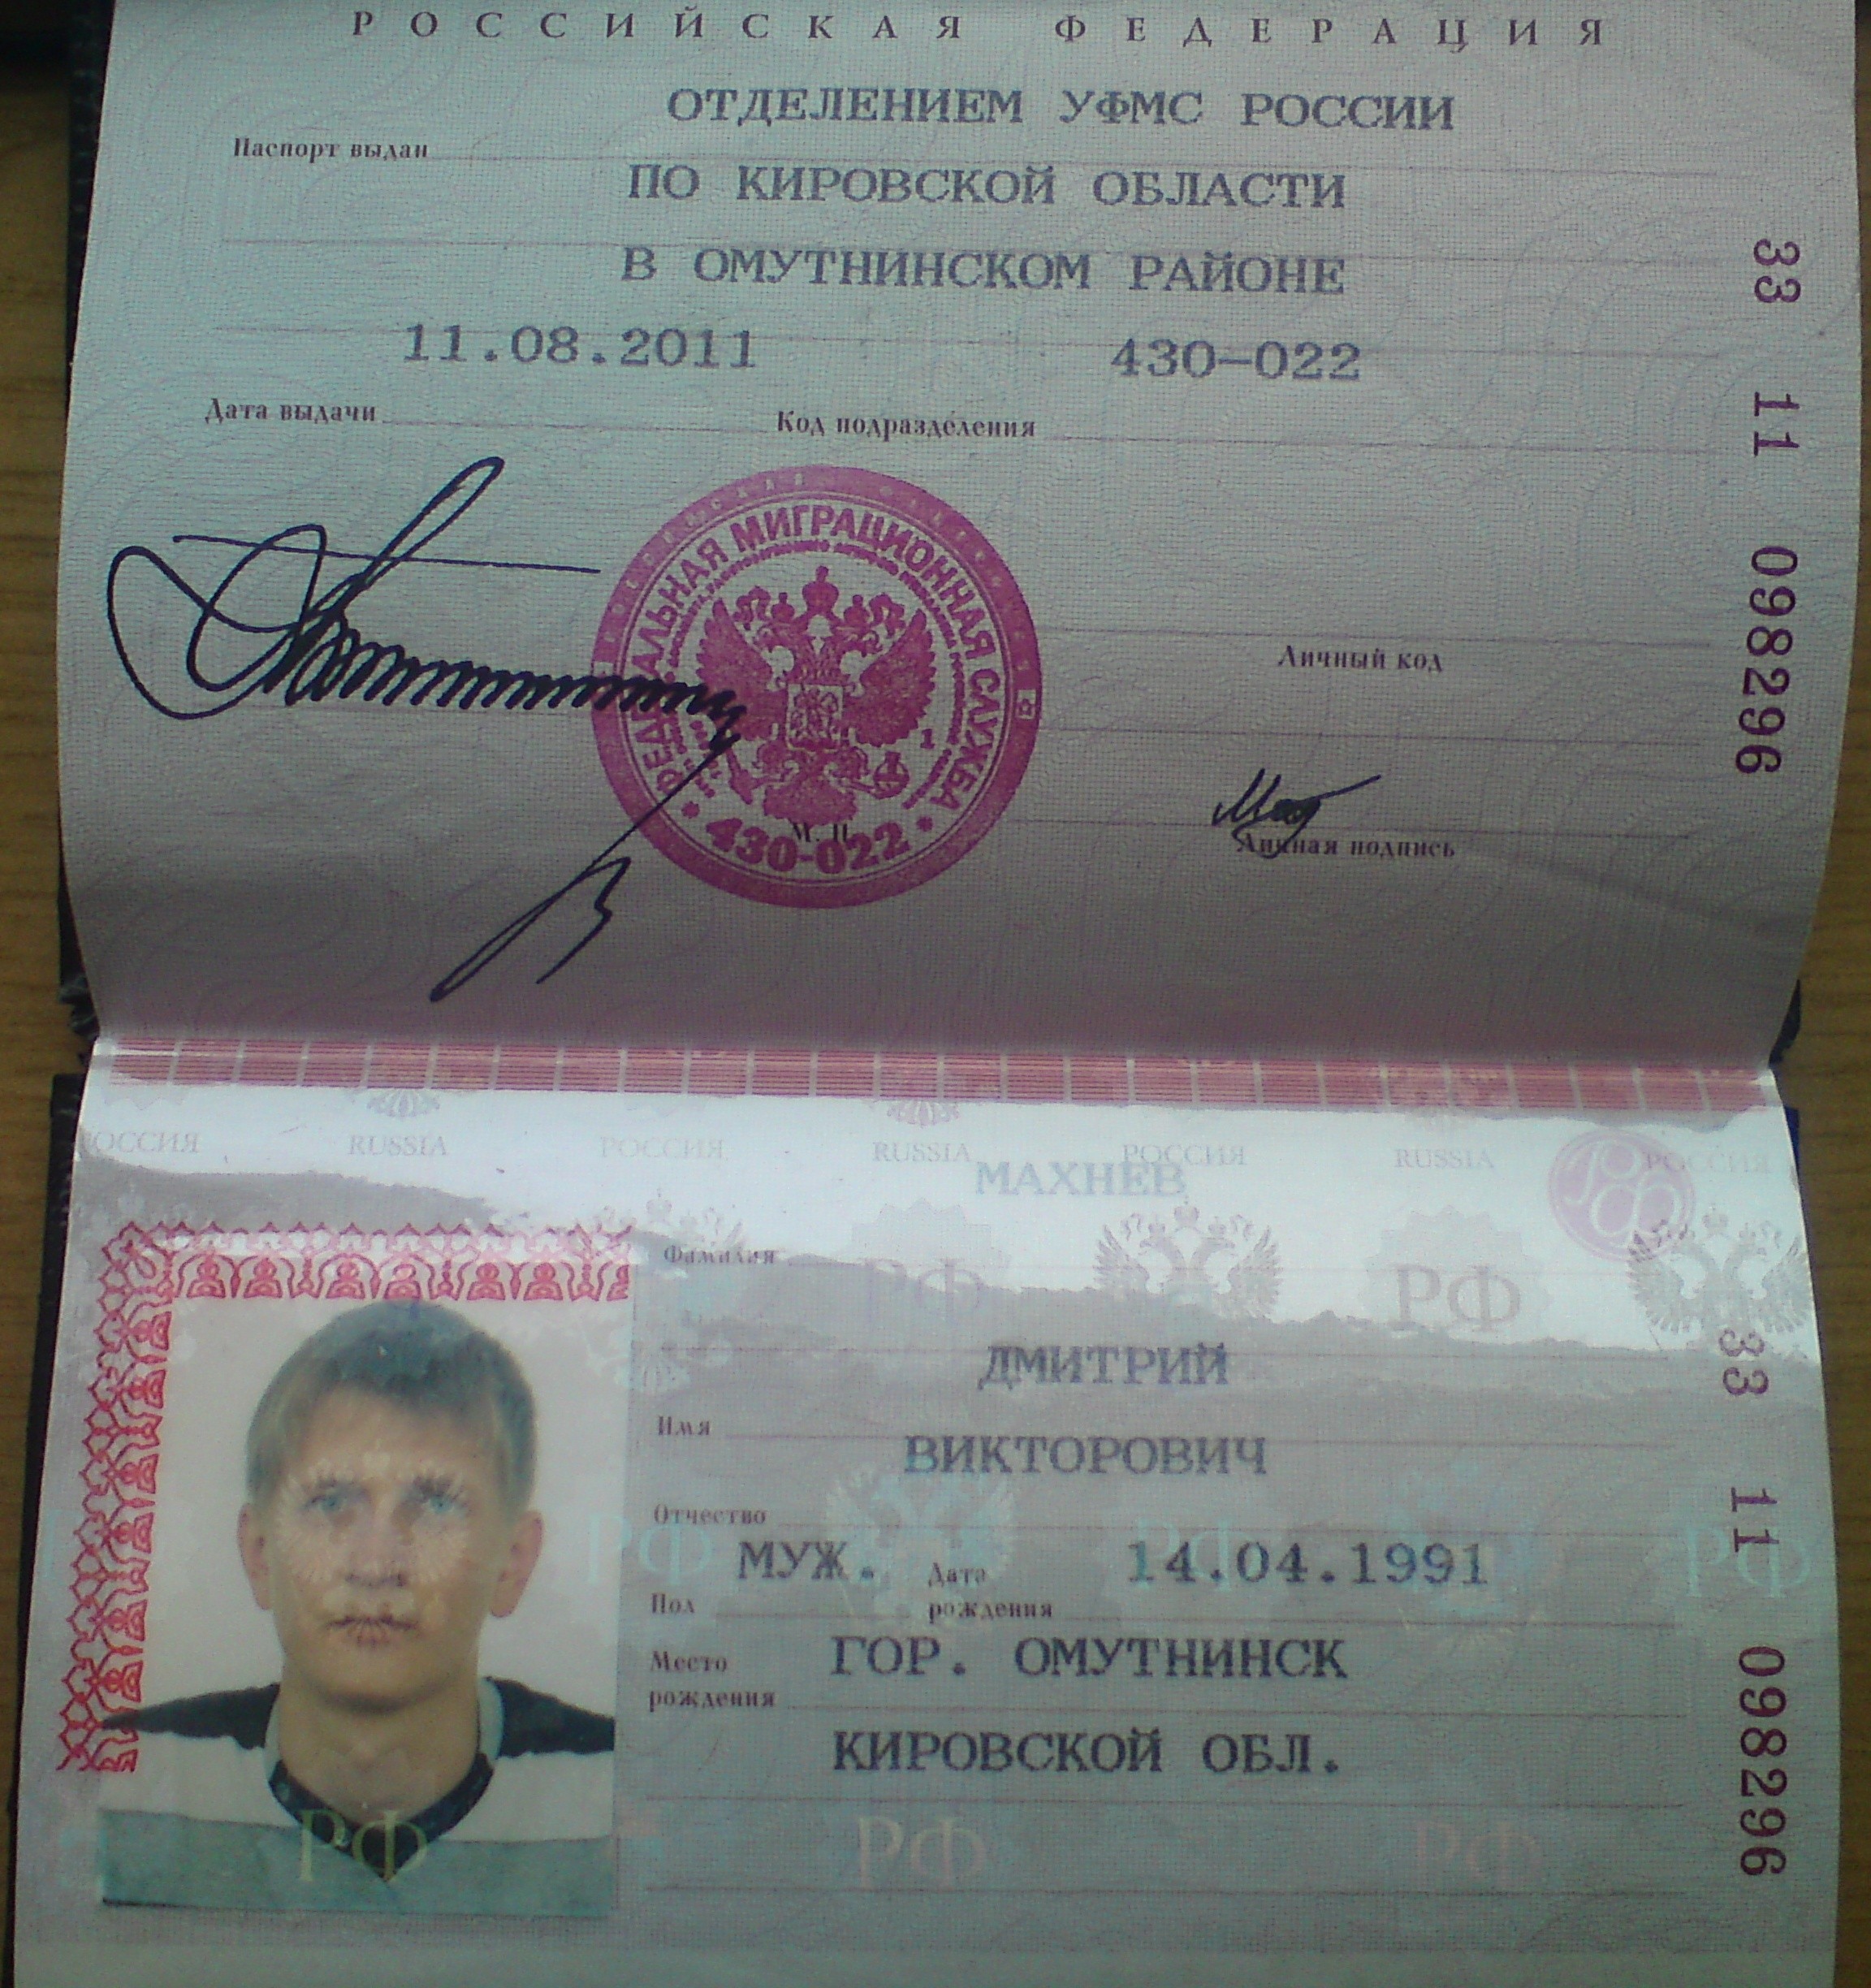 Фото паспорта 1998